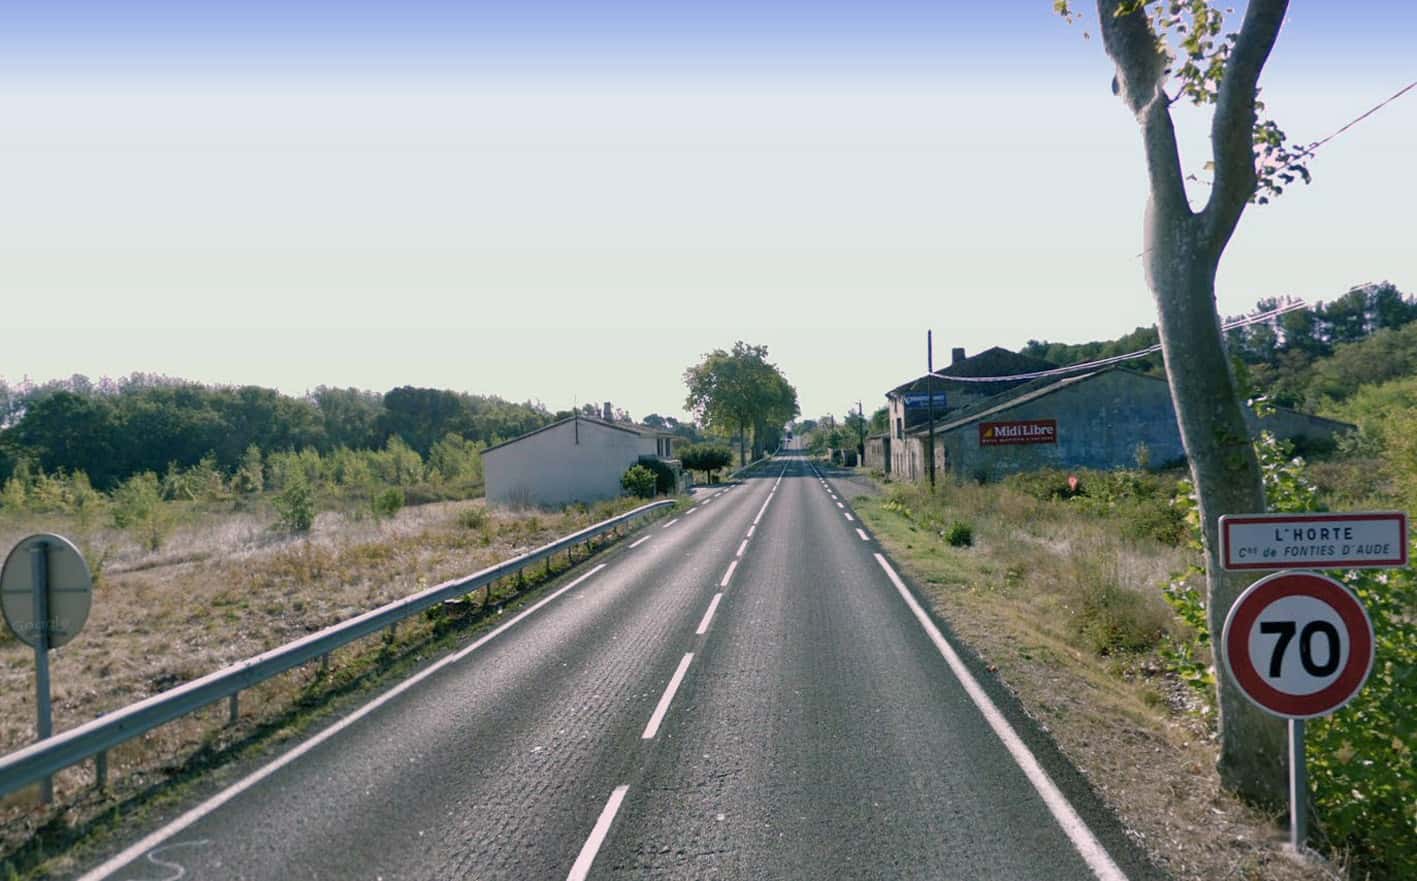 La strada dipartimentale 6113 nella località L’Horte a Trébes (Languedoc-Roussilion), ove spesso si registrano incidenti